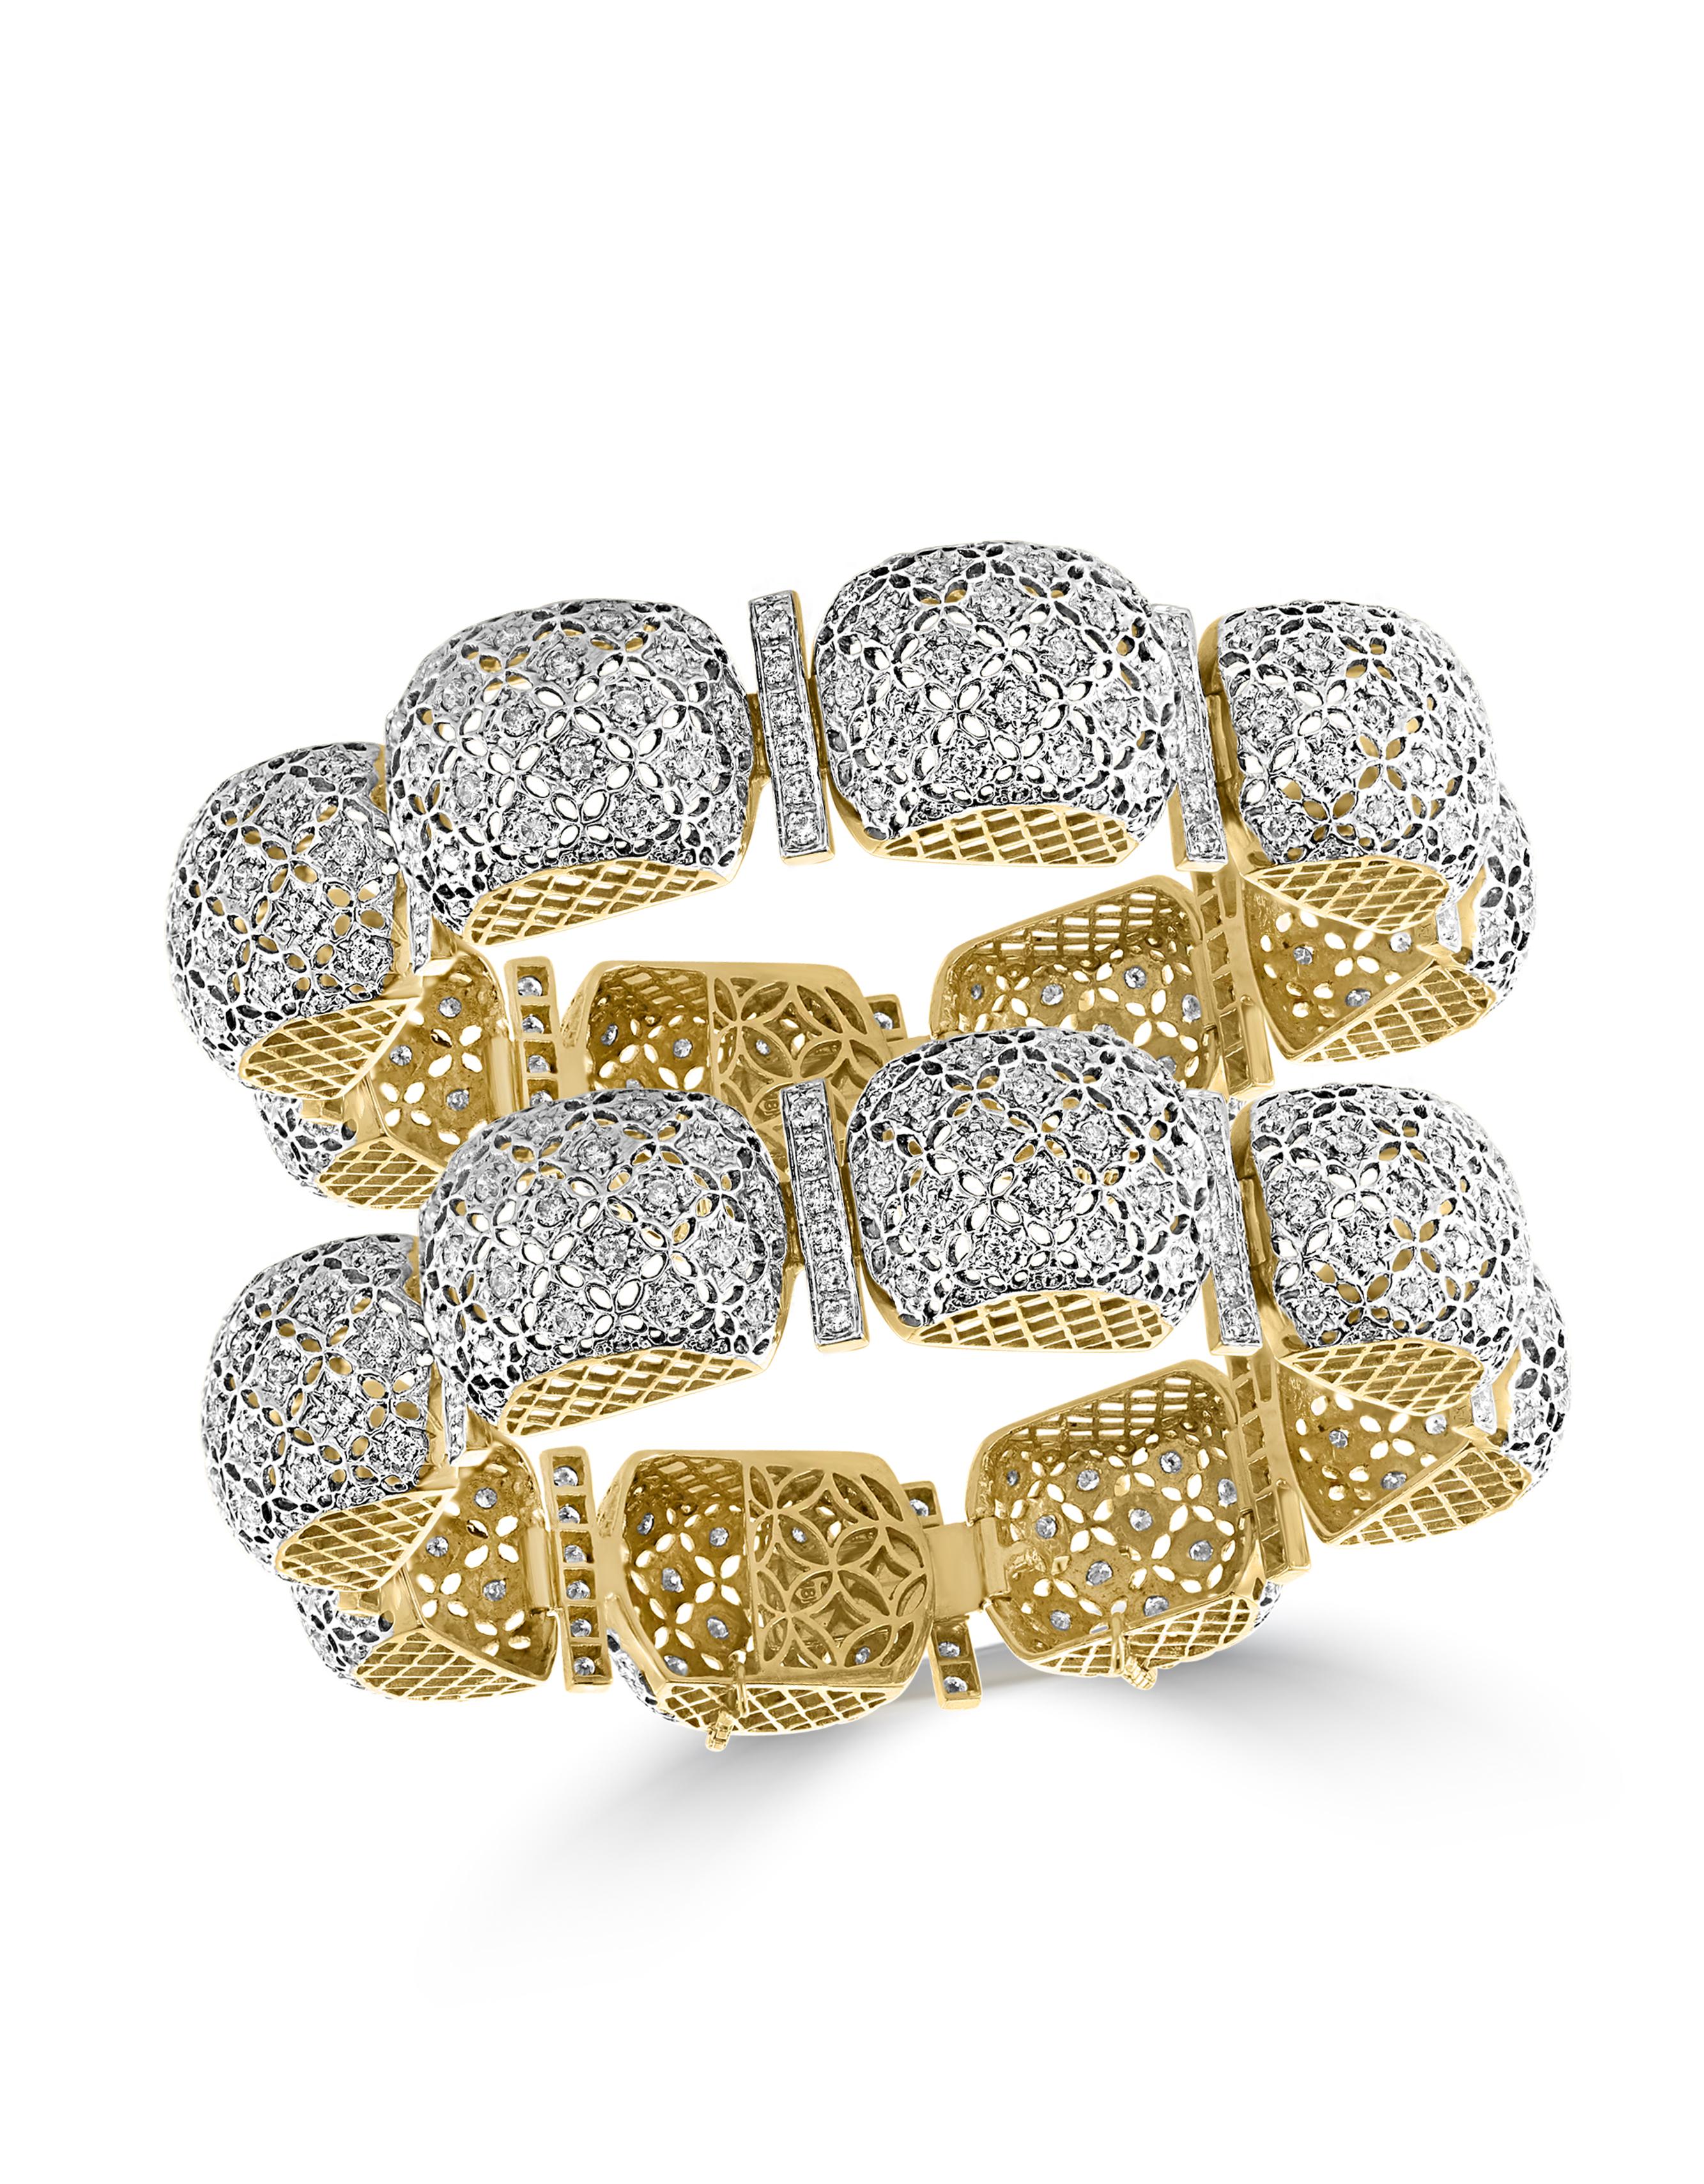 Mugul Style 18 Karat Yellow Gold and Diamonds Pair of Bangle / Bracelet 1